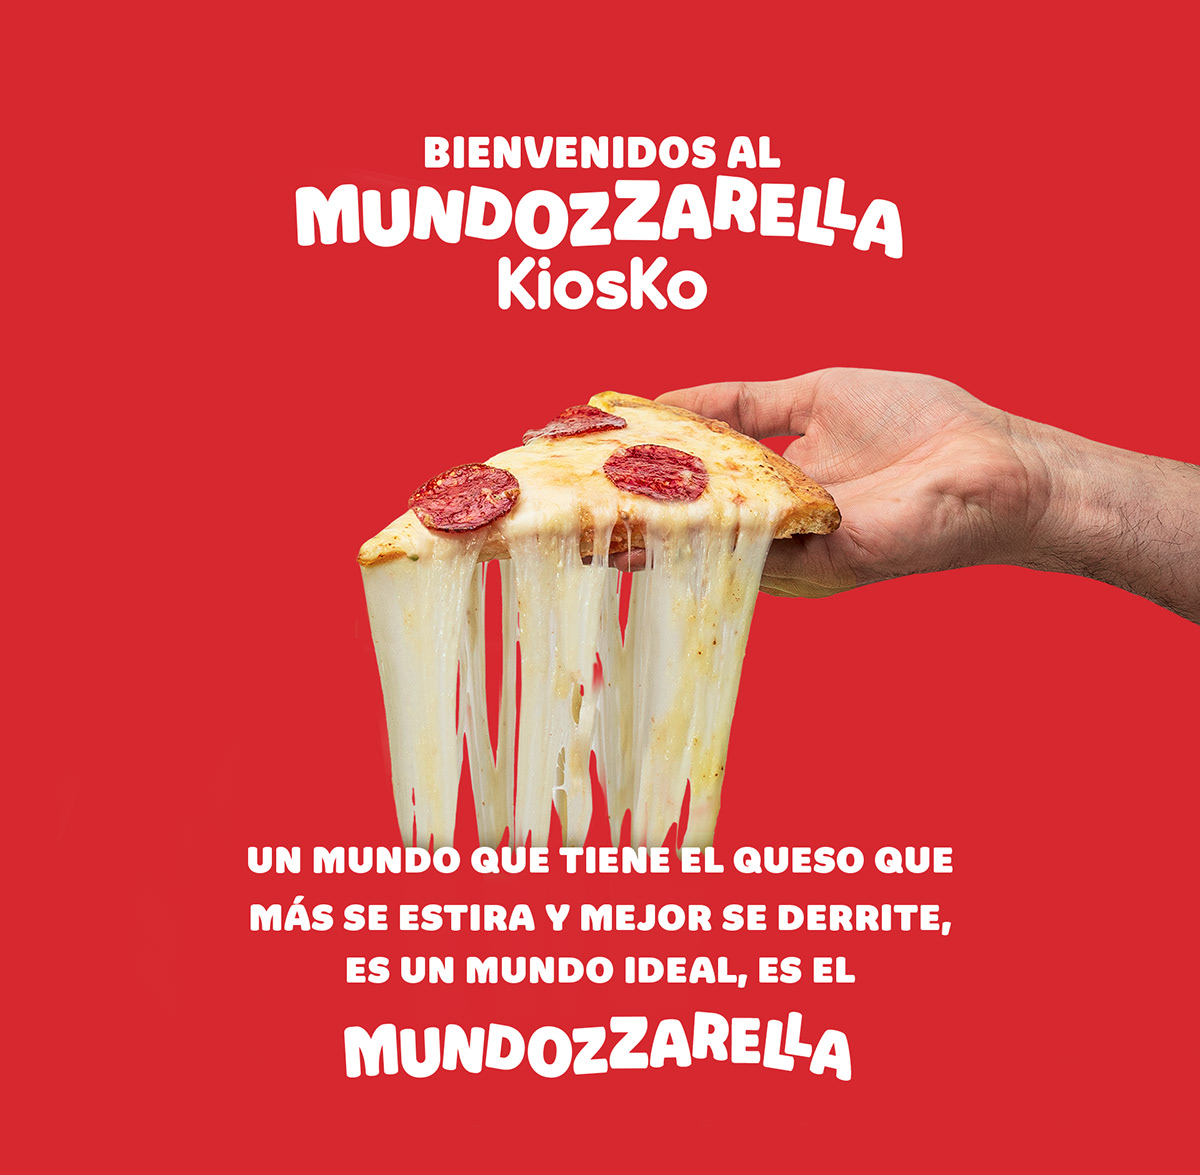 Kiosko quesos mozzarella Advertising  Cheese Ecuador mundozzarella